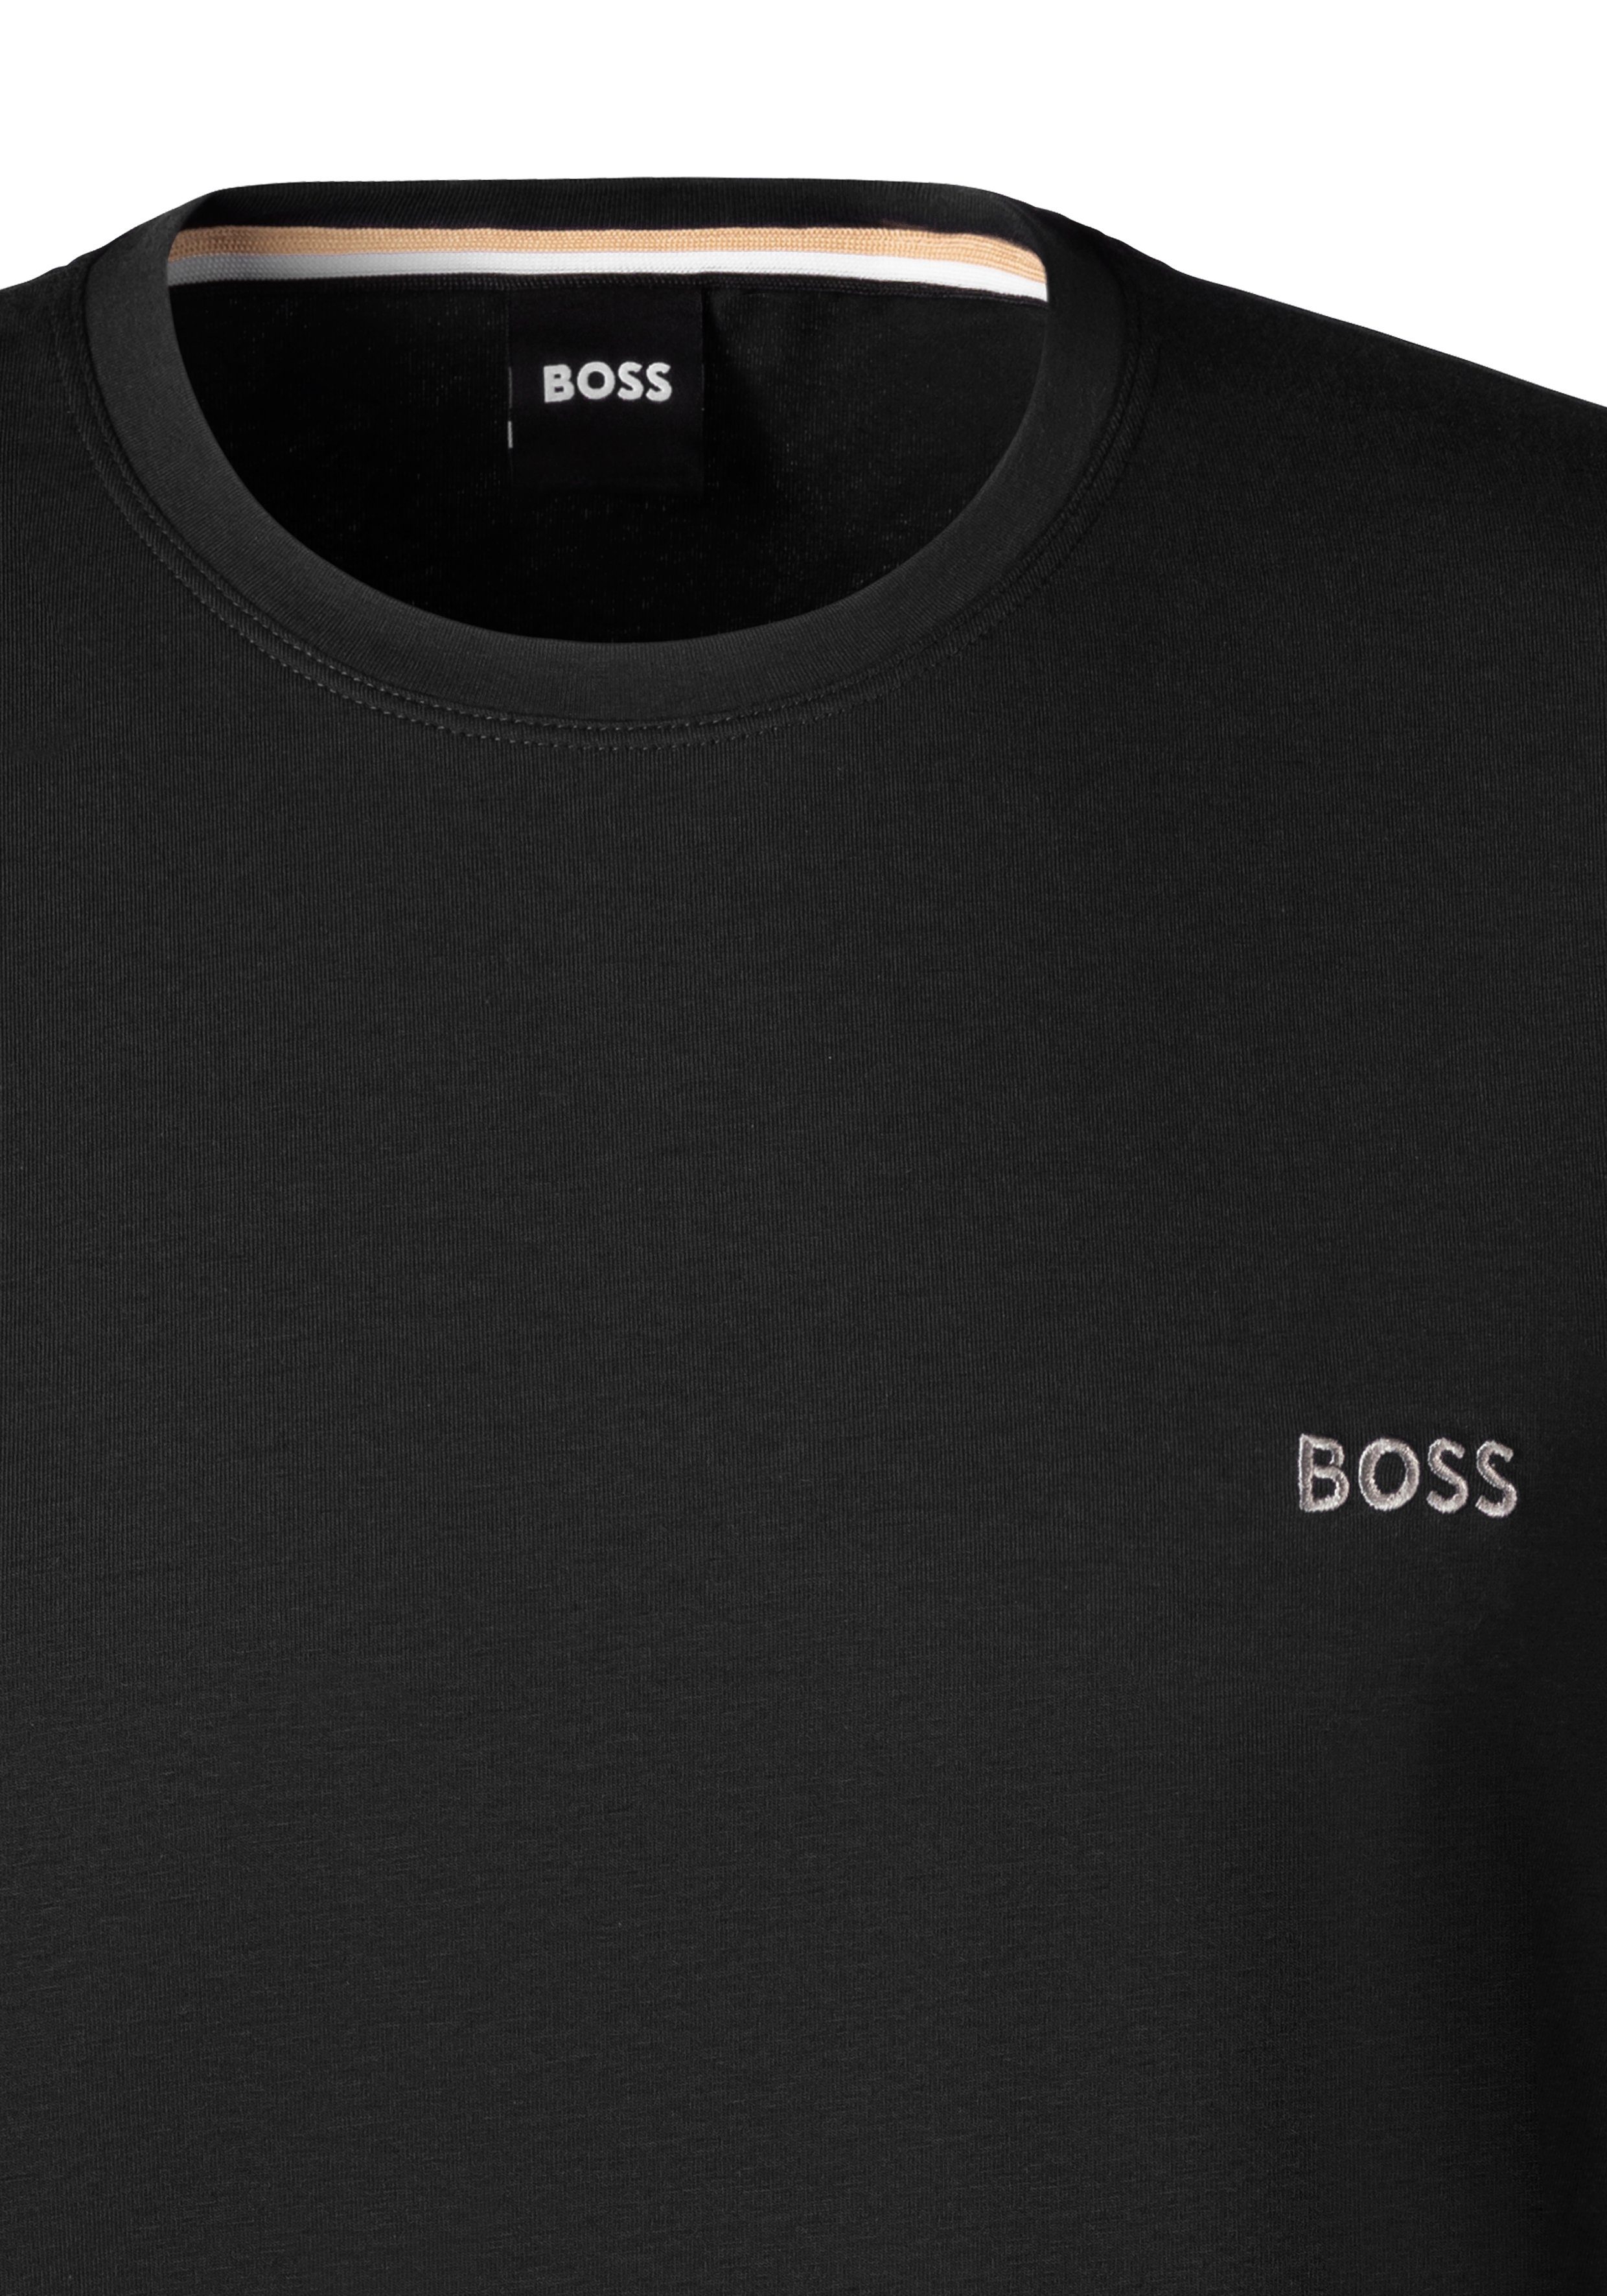 schwarz BOSS T-Shirt Brustlogo mit